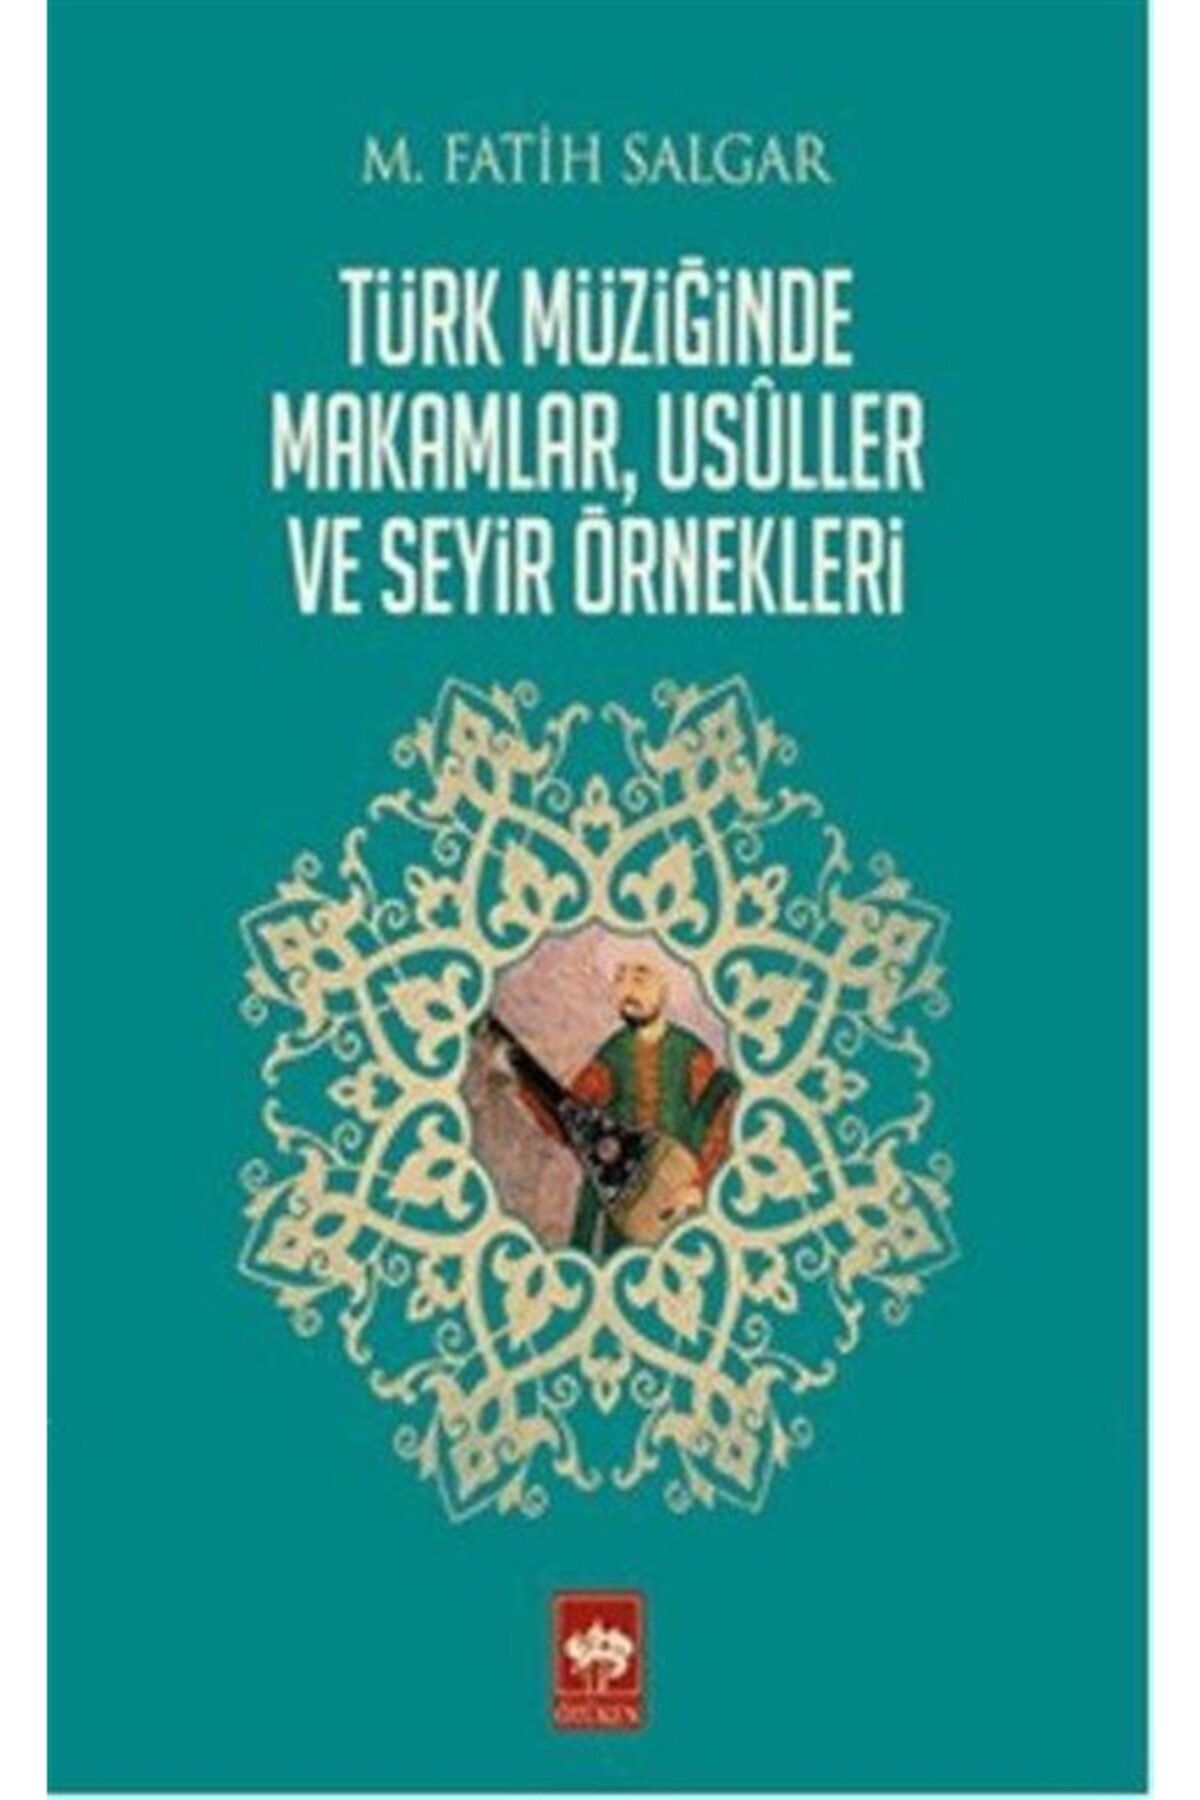 Ötüken Neşriyat Türk Müziğinde Makamlar, Usuller Ve Seyir Örnekleri / M. Fatih Salgar